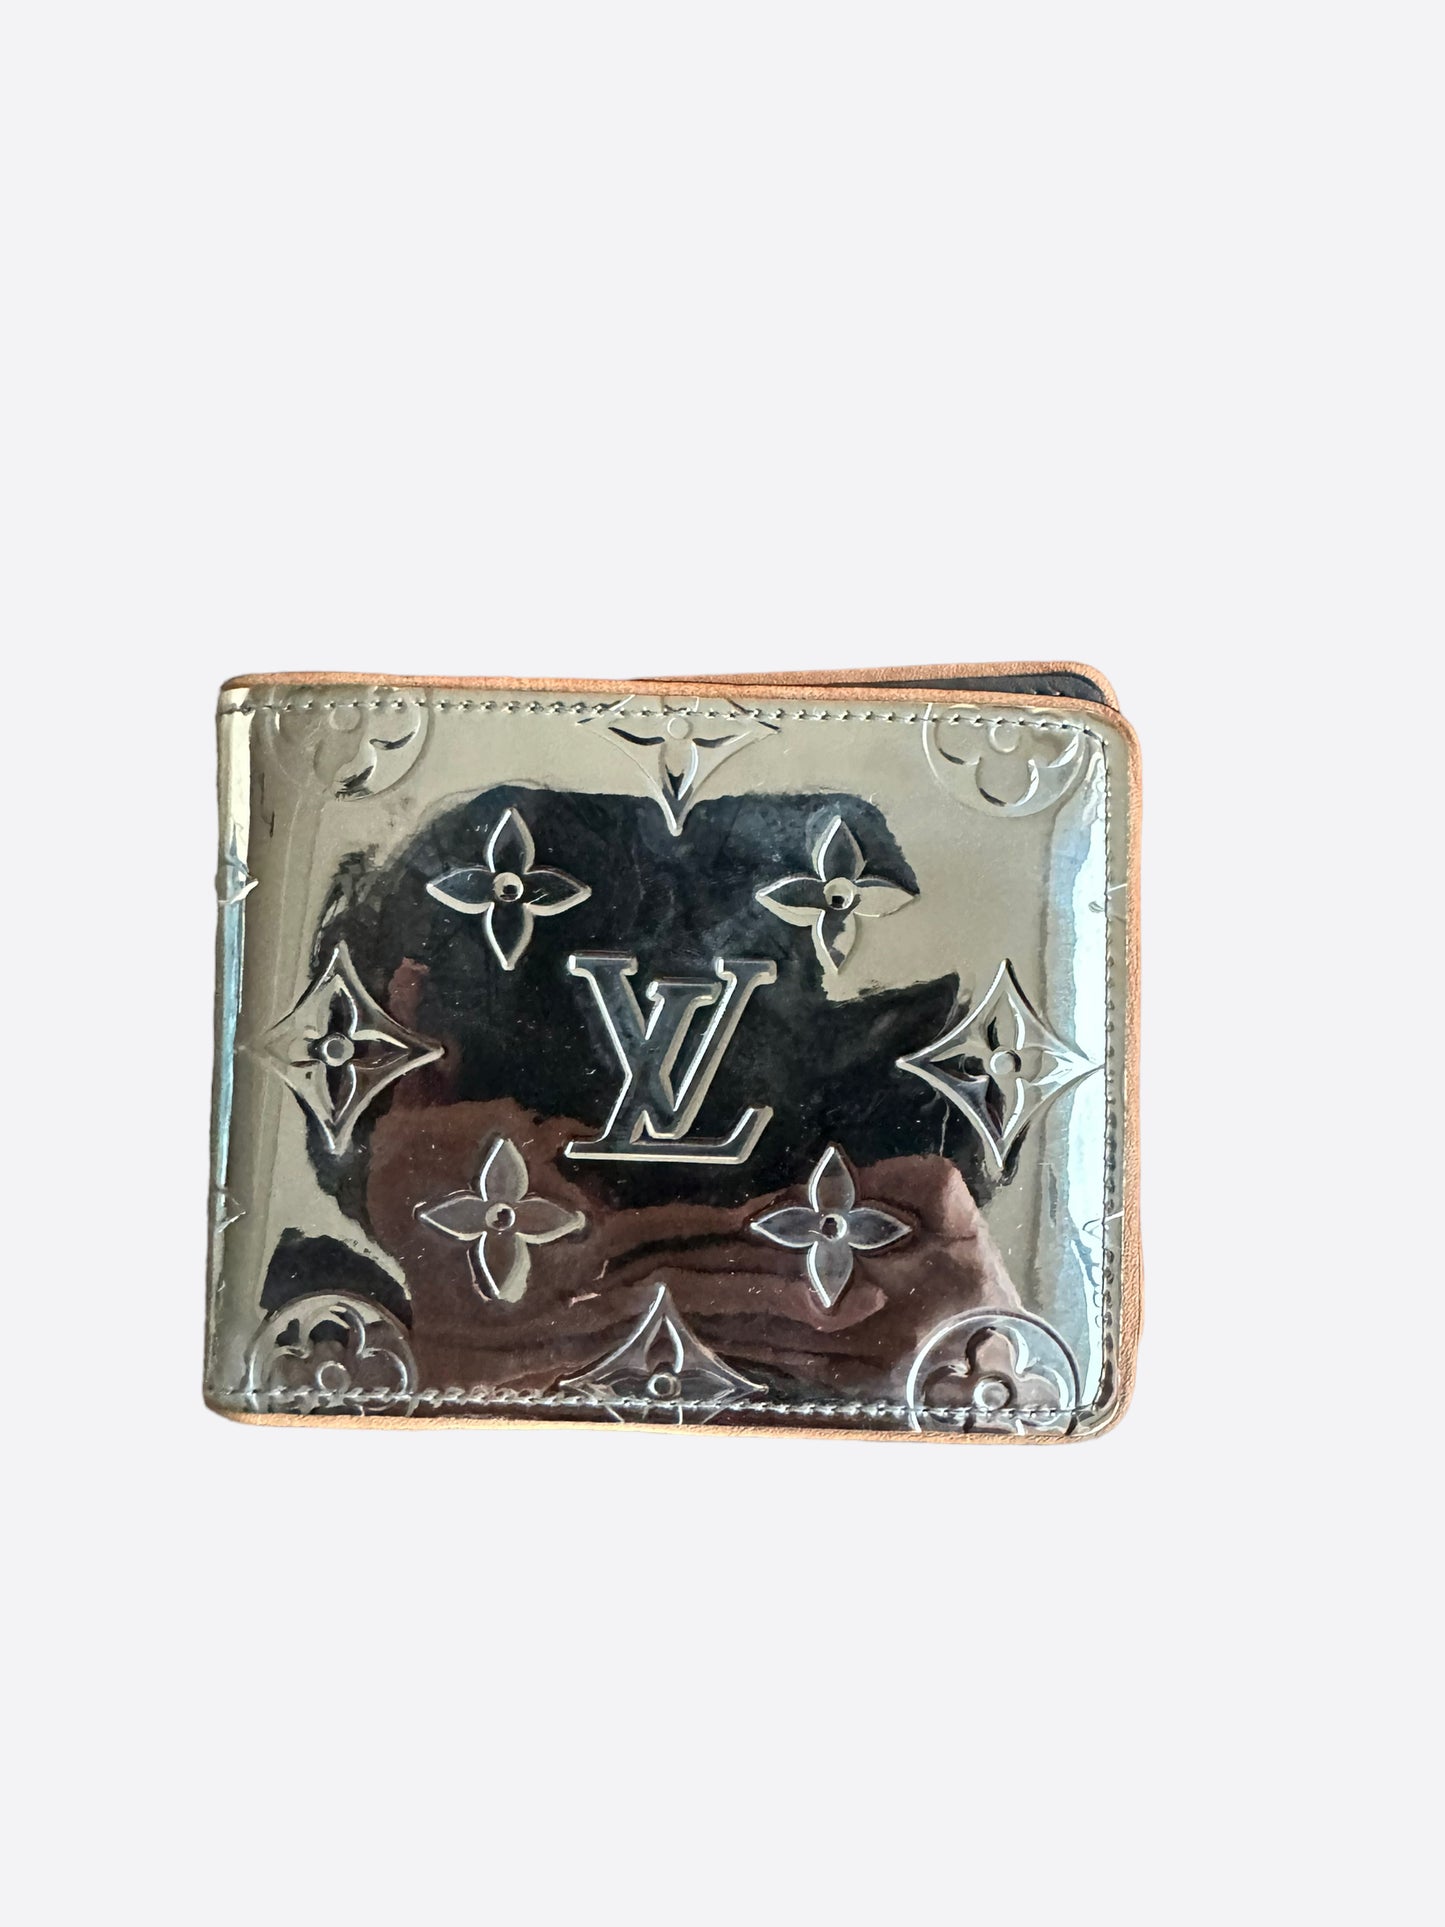 Louis Vuitton Mirror Bifold Wallet BNIB